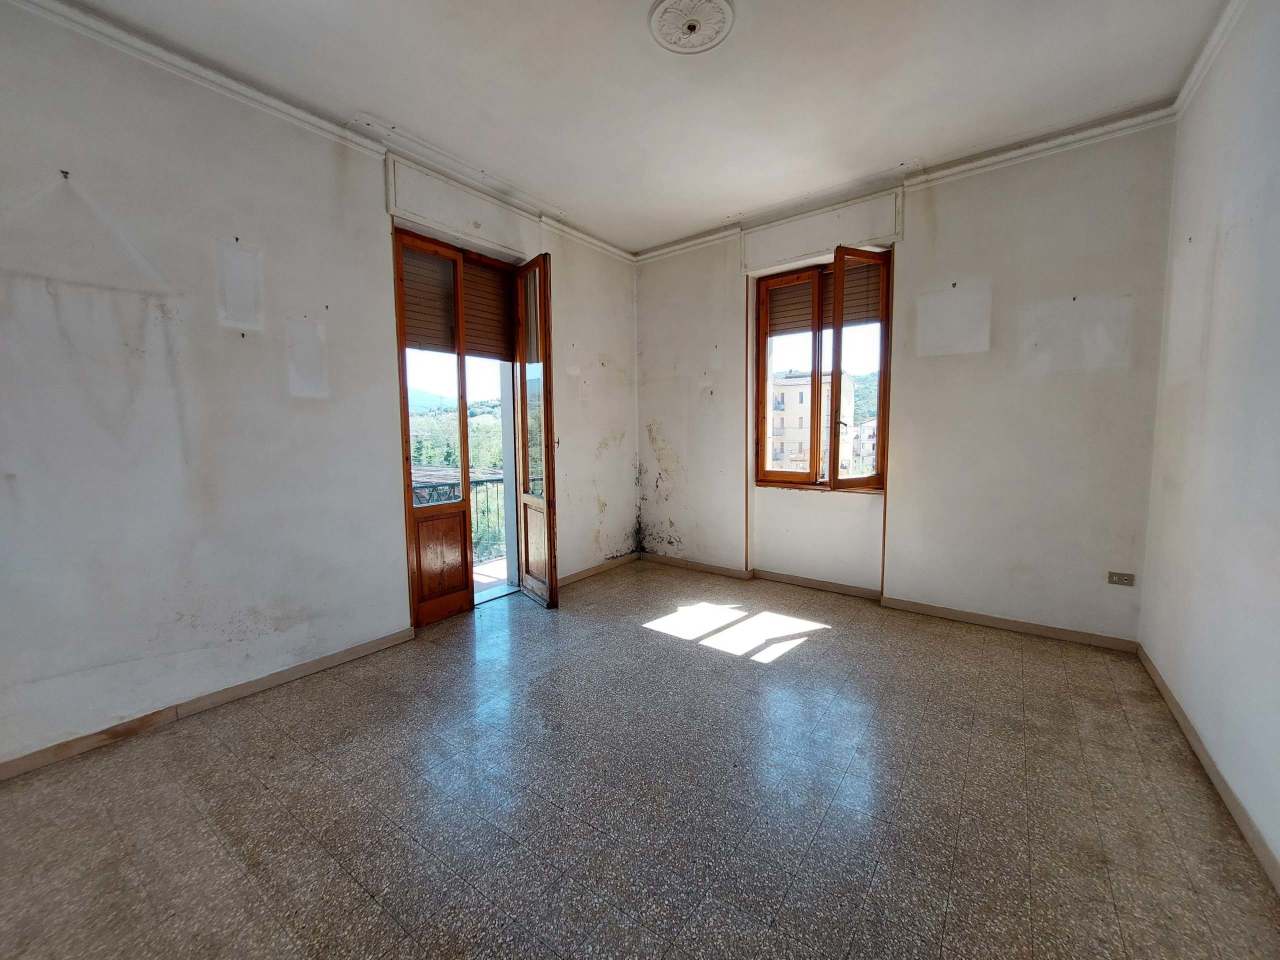 Appartamento in vendita a Pontassieve, 4 locali, prezzo € 120.000 | PortaleAgenzieImmobiliari.it